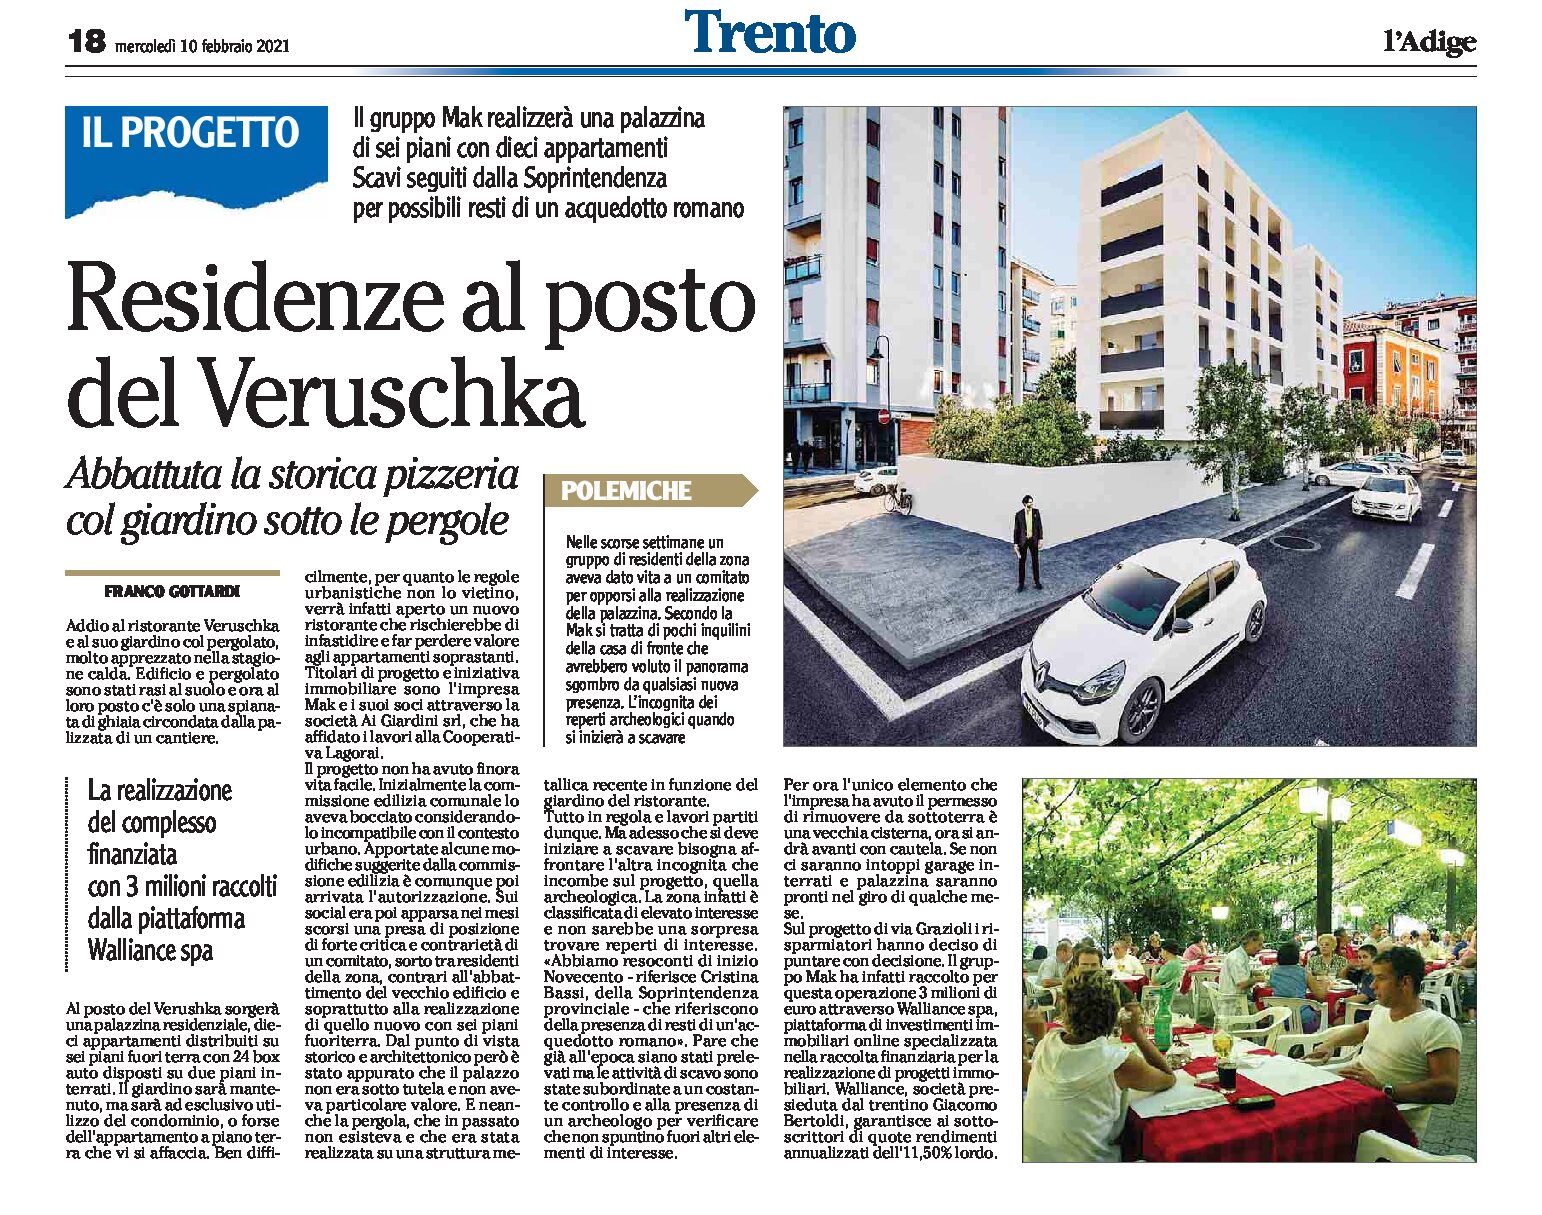 Trento, via Grazioli: palazzina residenziale di 6 piani al posto della storica pizzeria Veruschka rasa al suolo